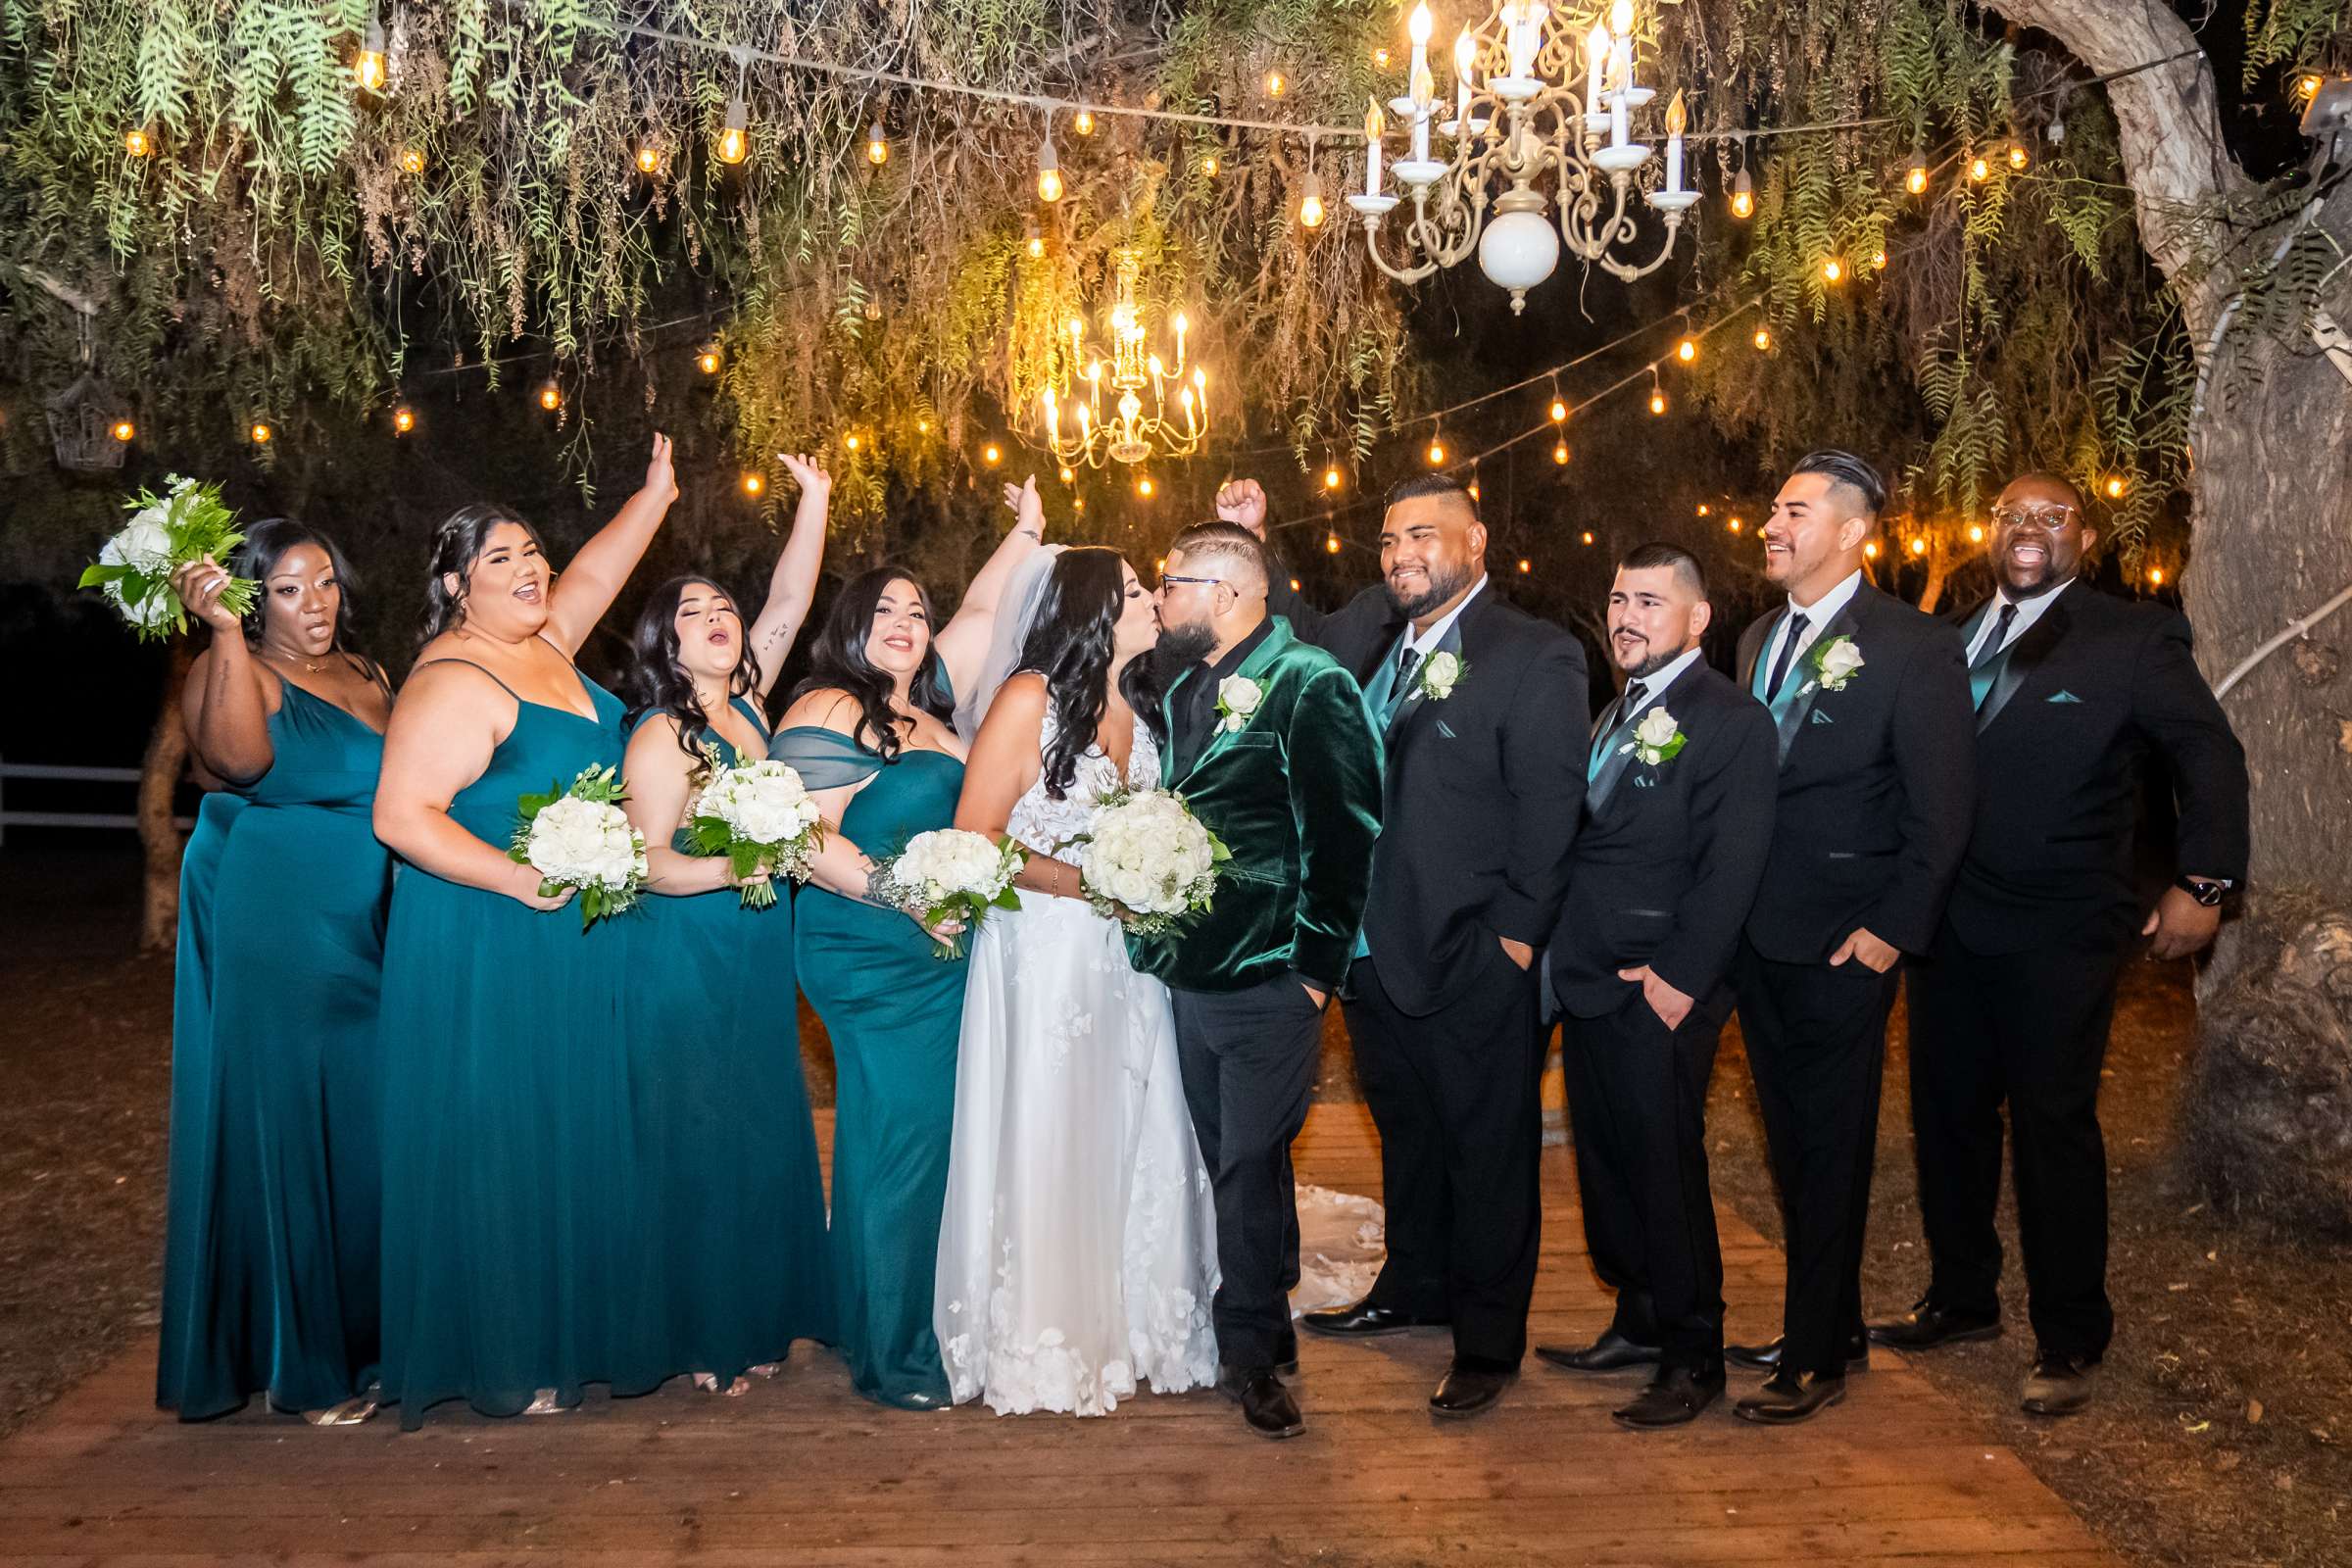 La Hacienda Wedding, Ashley and Alvaro Wedding Photo #10 by True Photography